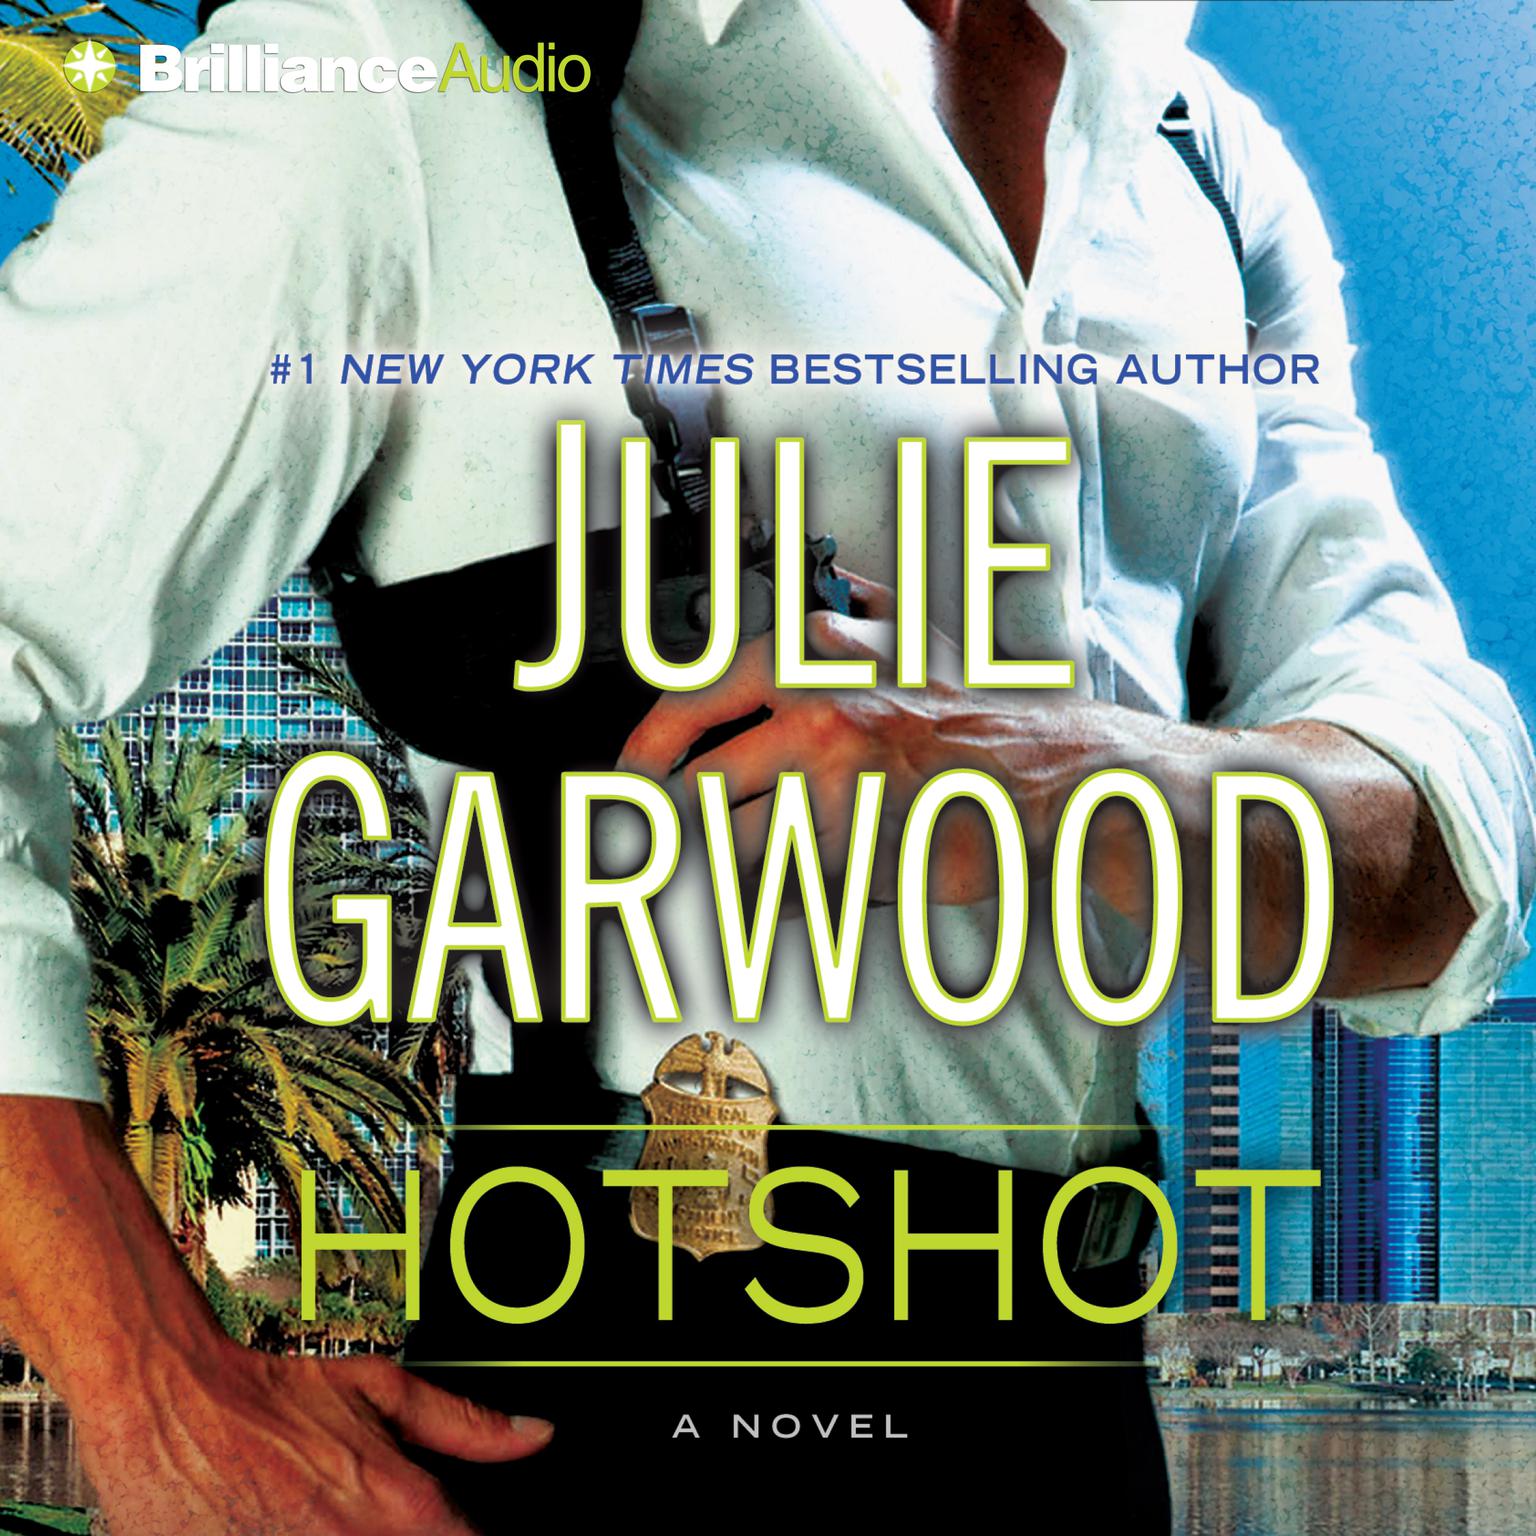 Hotshot Audiobook, by Julie Garwood